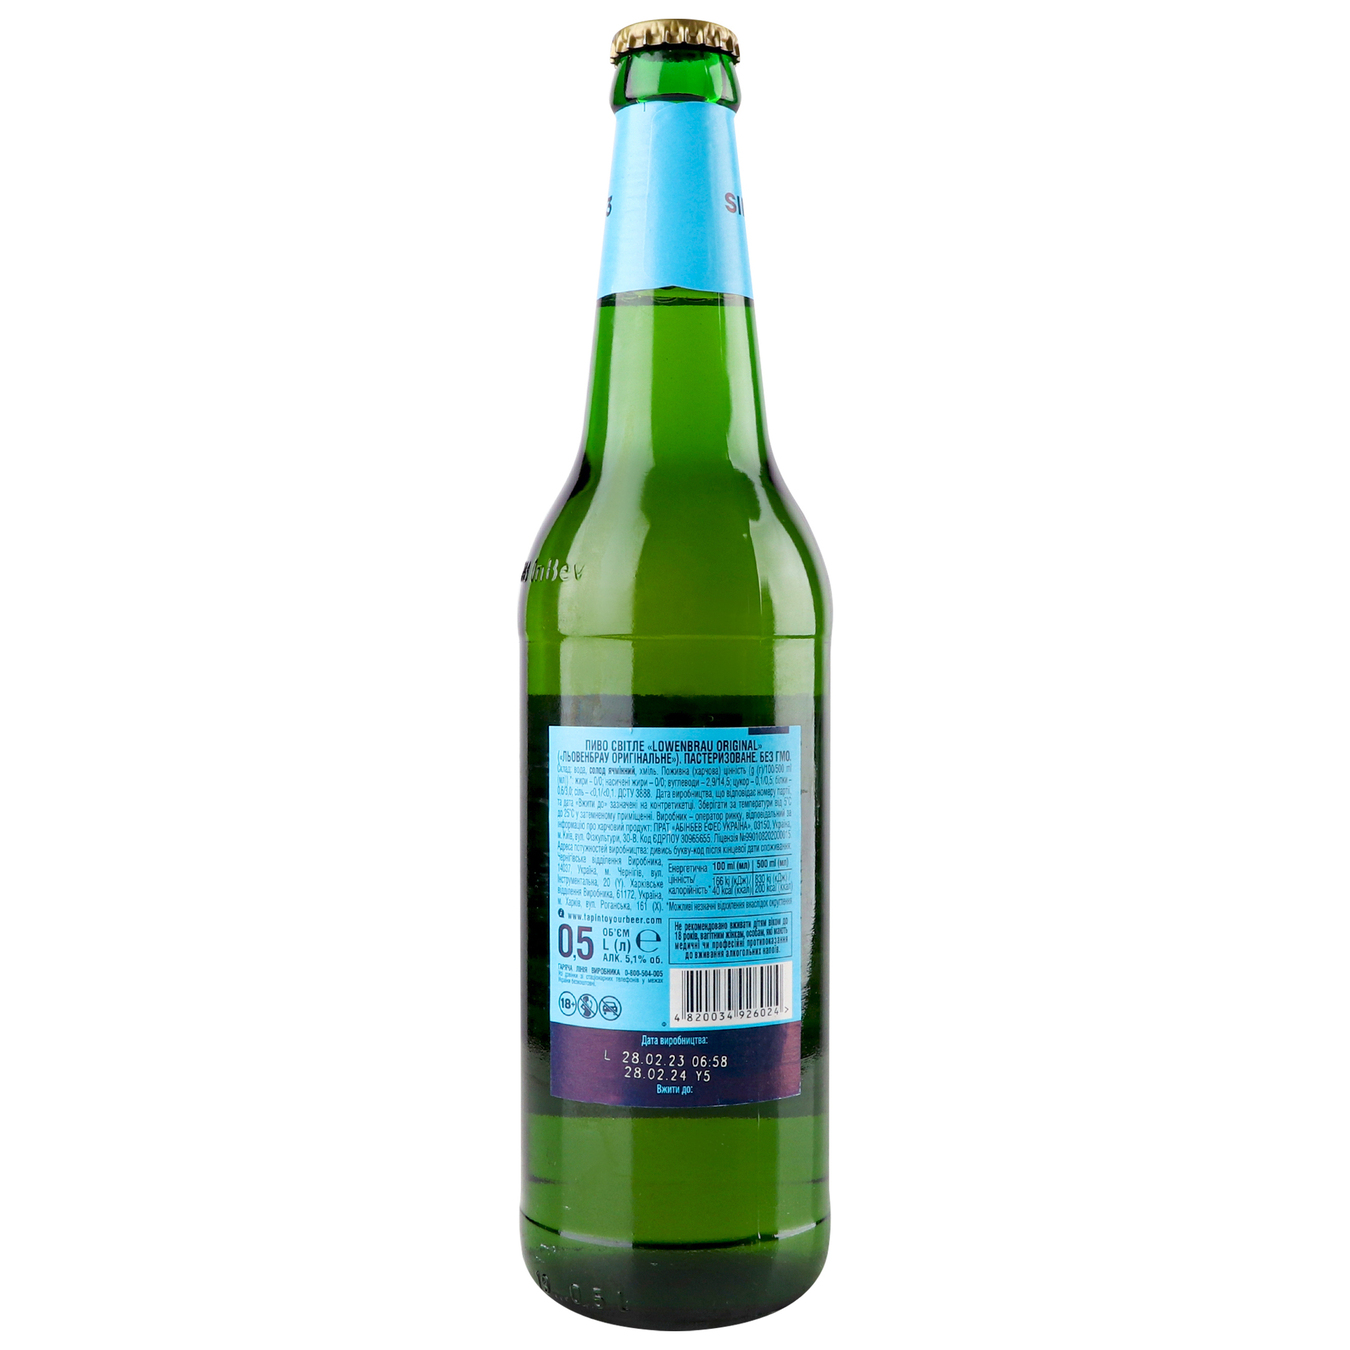 Пиво Lowenbrau Original светлое пастеризованное 5,1% 0,5л стеклянная бутылка 2